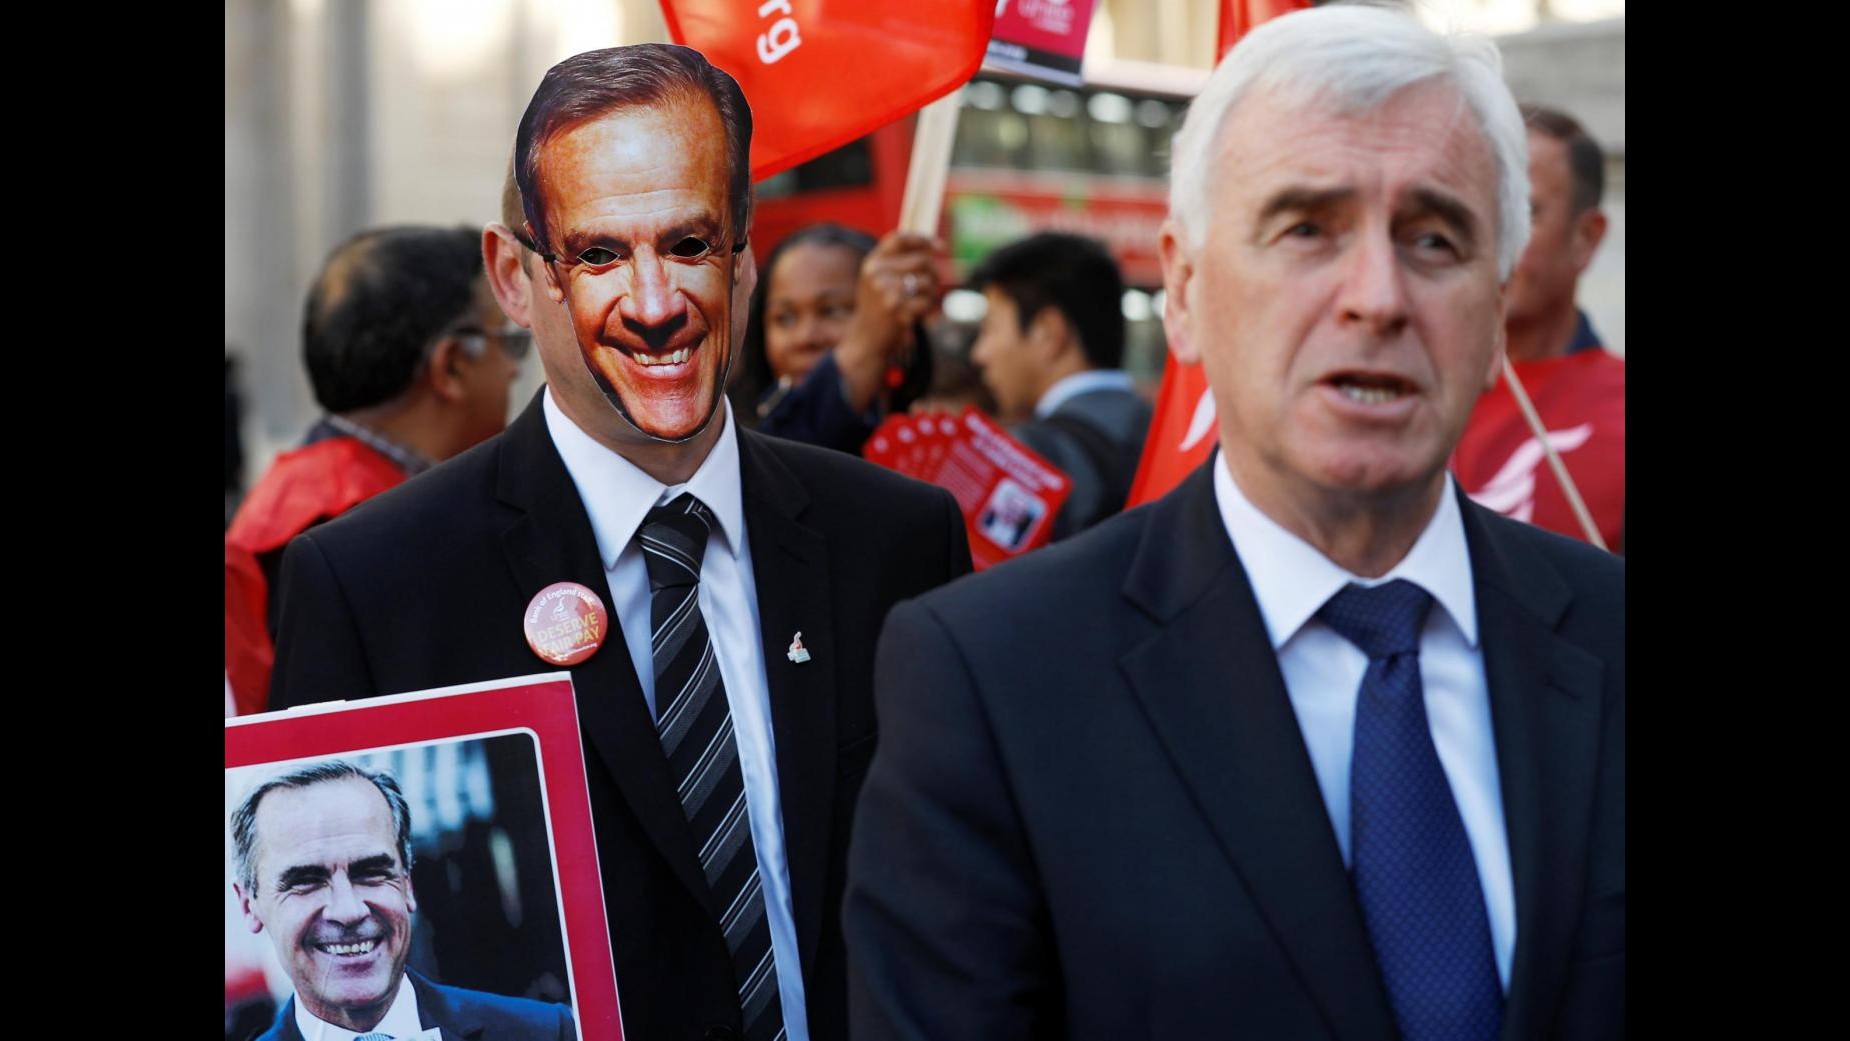 Sciopero storico alla Bank of England: la protesta in maschera